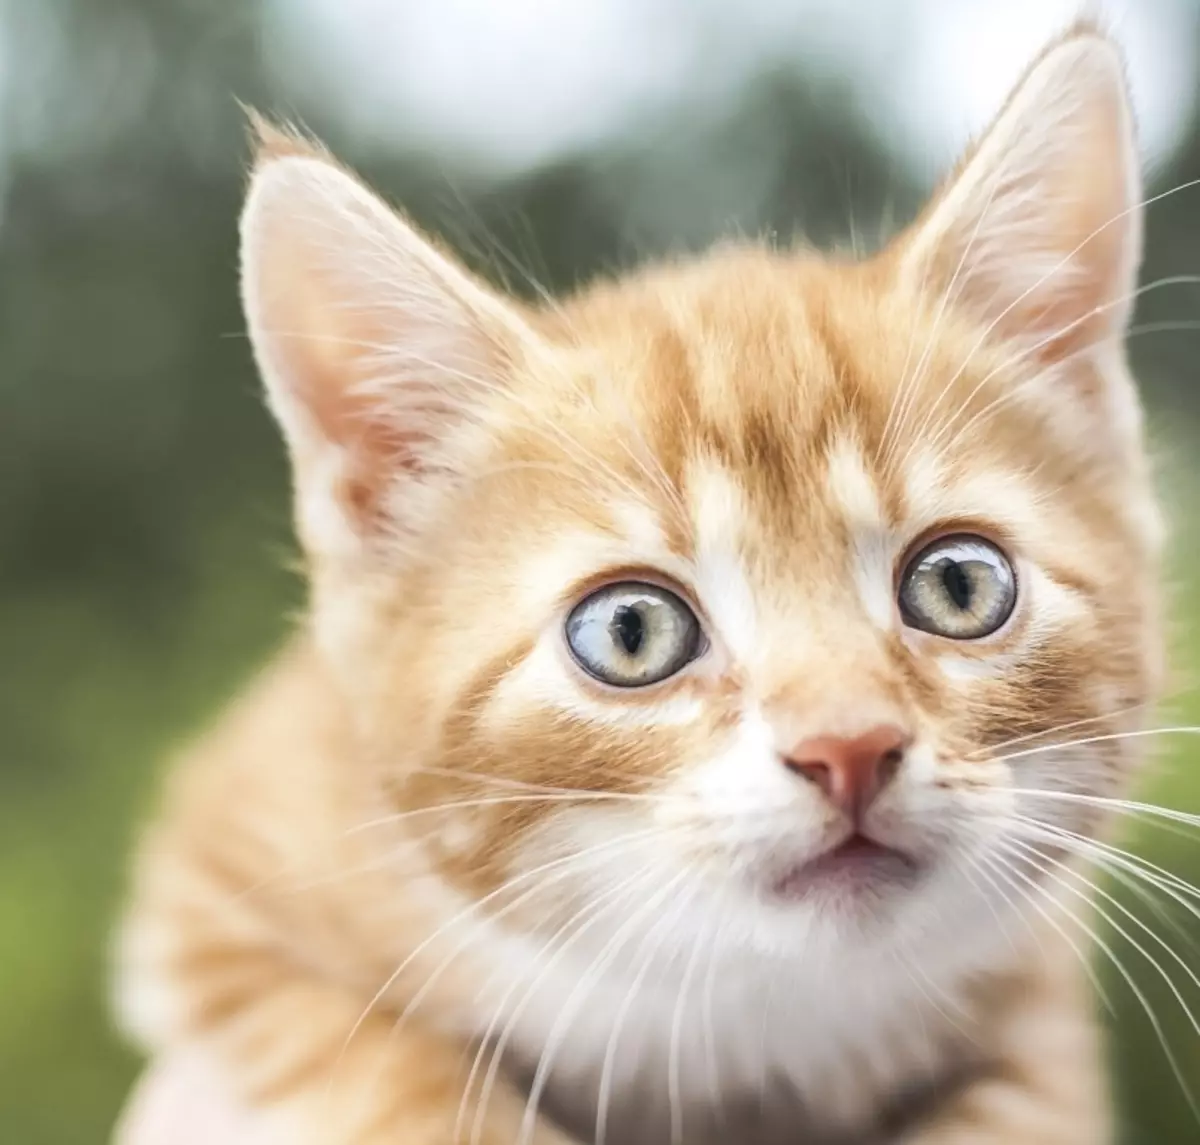 Meriv çawa bi pisîk û pisîk re bang dike? Navên navên orjînal û xweşik ji bo kur û keçên rengîn ên sor 22574_27